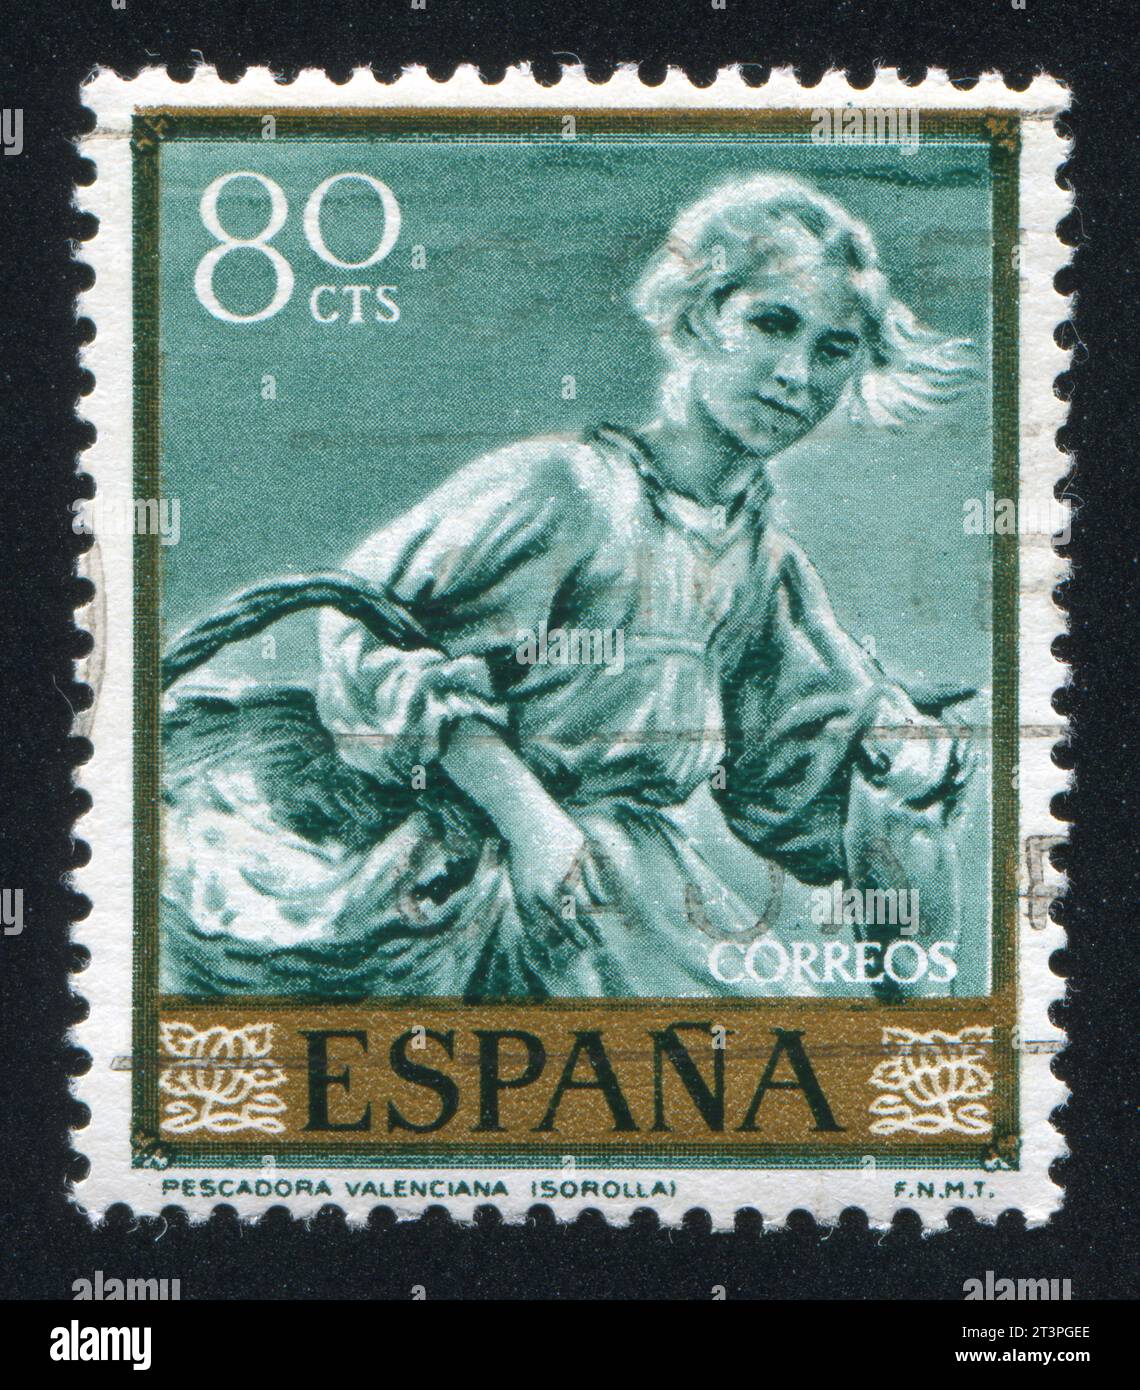 ESPAGNE - VERS 1964: Timbre imprimé par l'Espagne, montre la Fisherwoman de Valence par Joaquin Sorolla, vers 1964 Banque D'Images